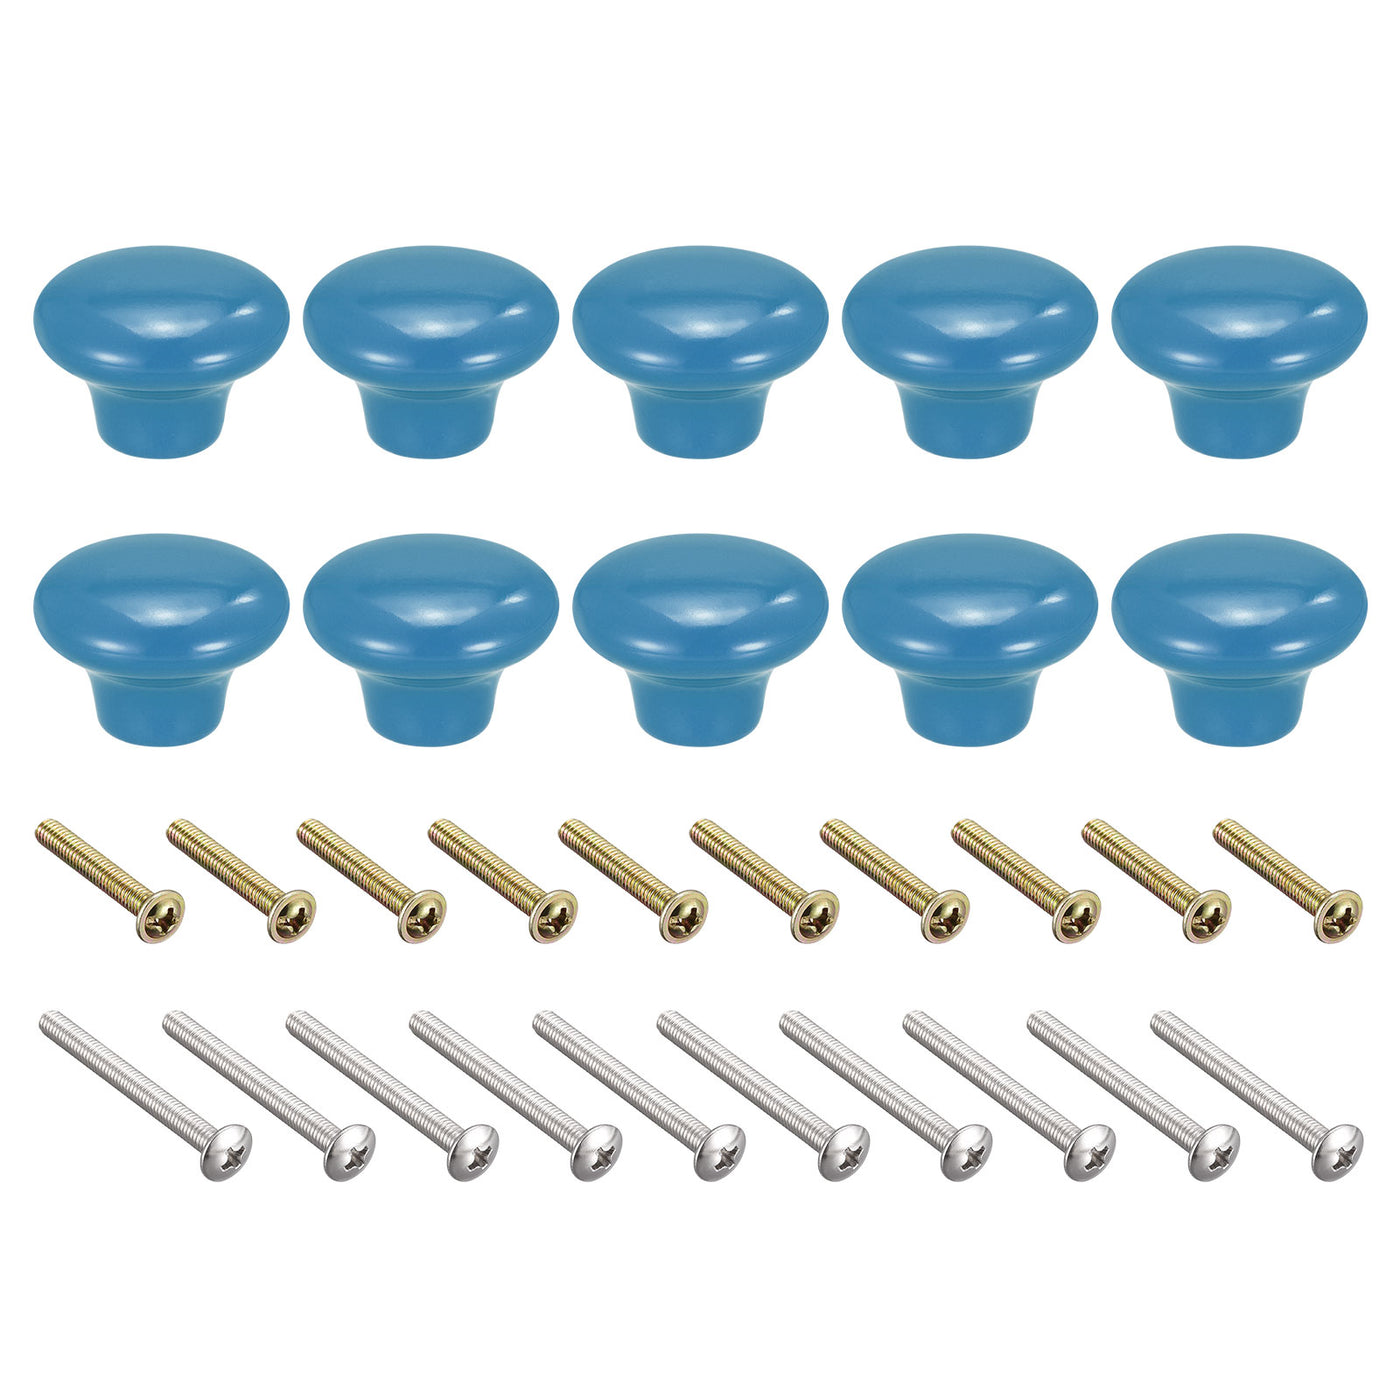 uxcell Uxcell 38x28mm Ceramic Drawer Knobs, 10pcs Mushroom Shape Door Pull Handles Blue